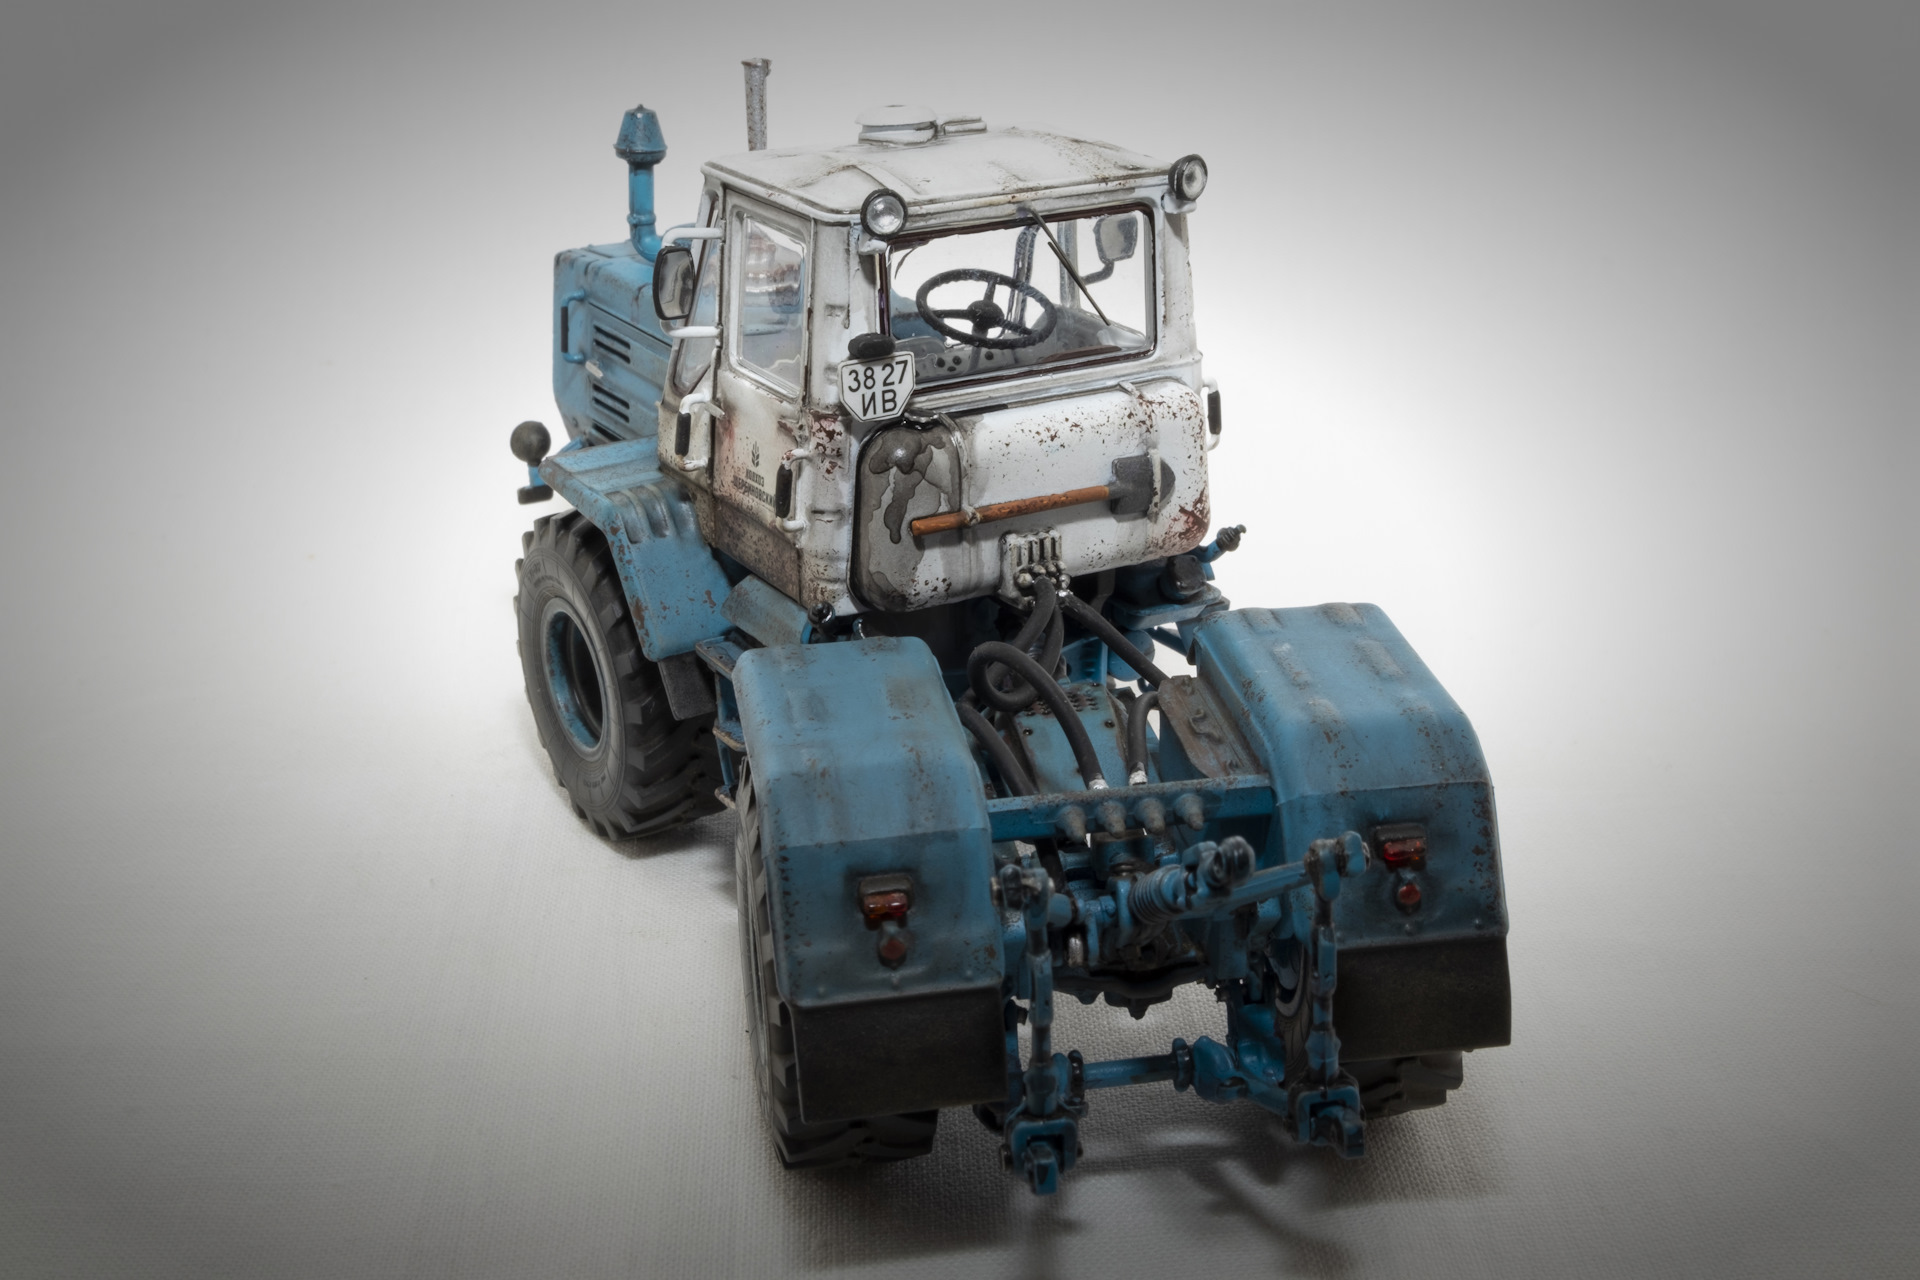 Двигатель трактора т-150: от смд-60 до ямз-236